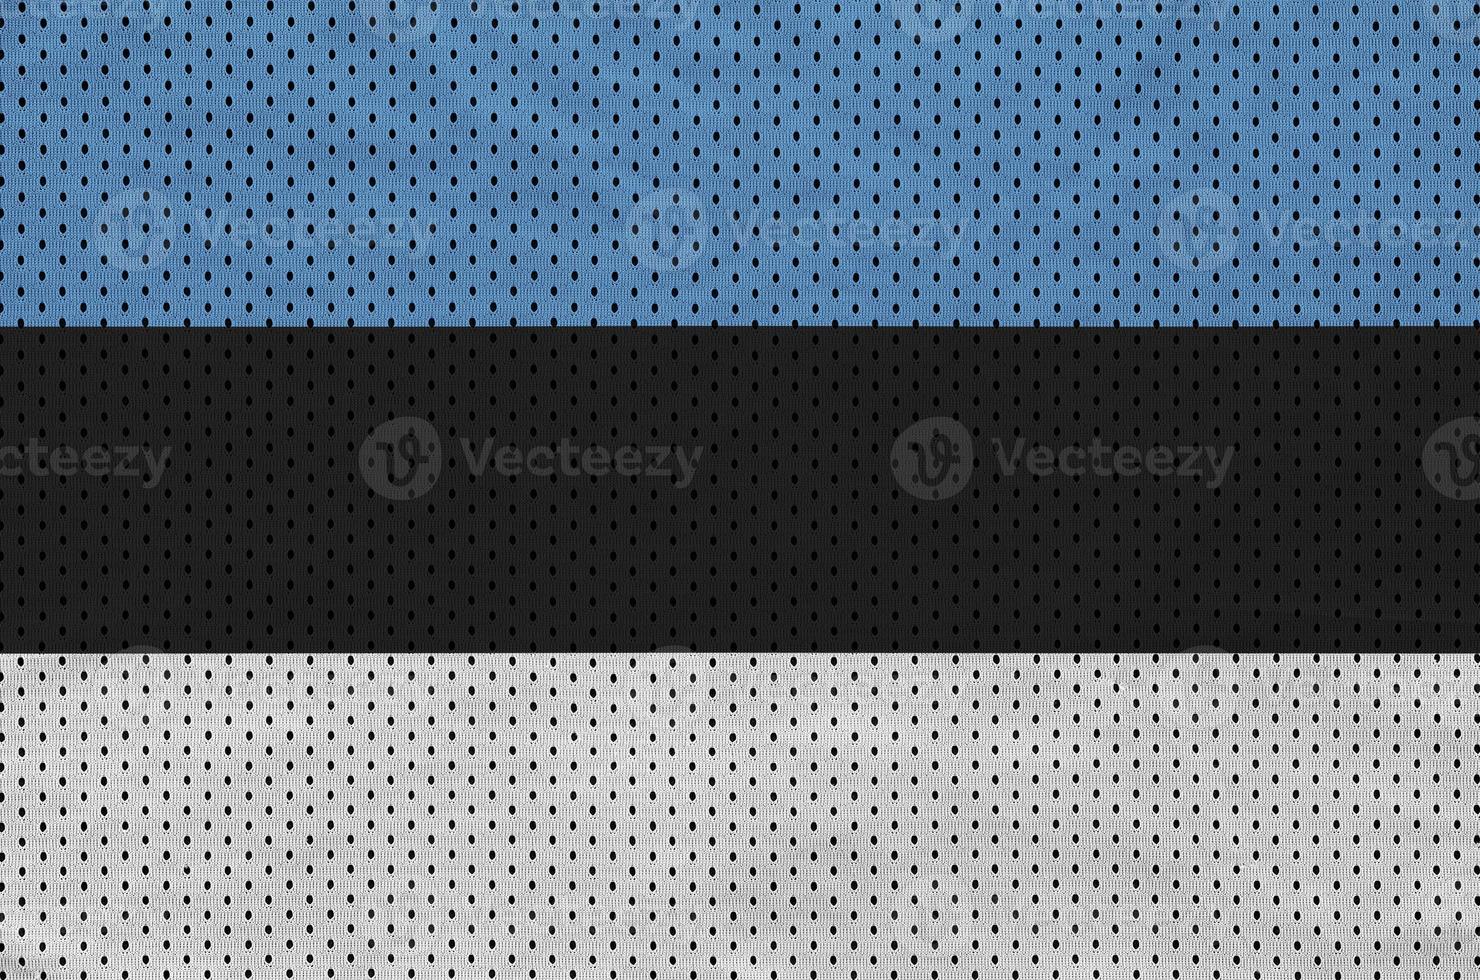 Estland vlag gedrukt Aan een polyester nylon- sportkleding maas kleding stof foto